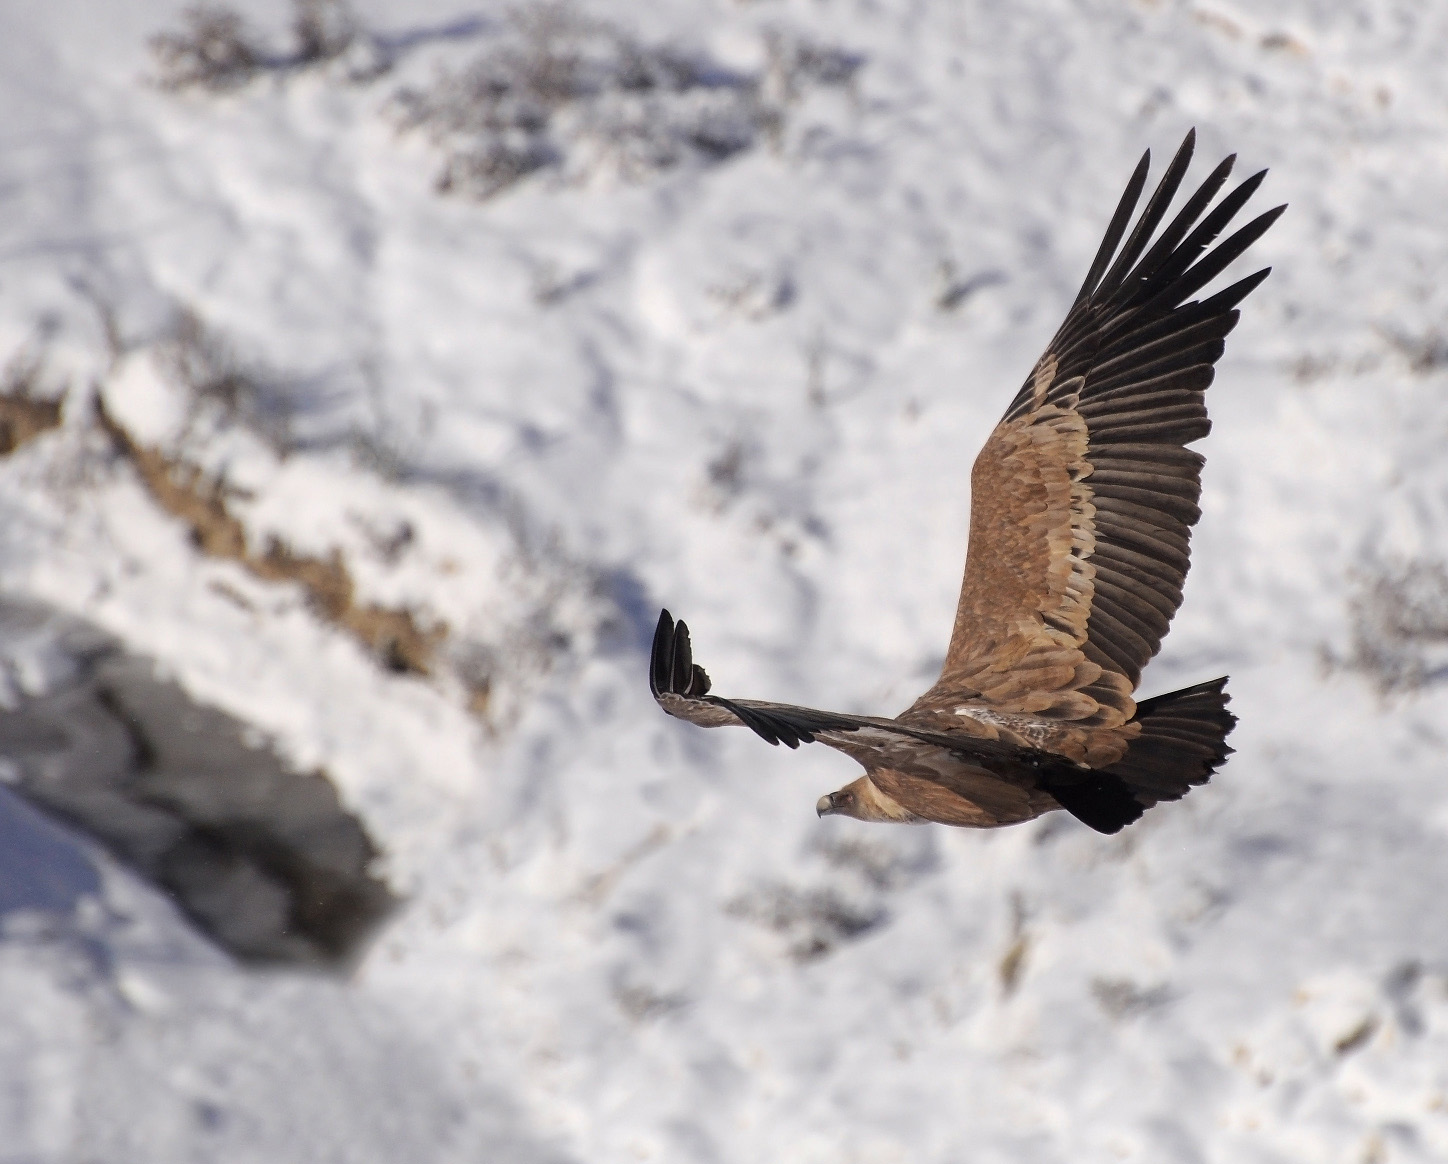 Griffon vulture nyob rau hauv davhlau rau hauv keeb kwm ntawm lub pob zeb